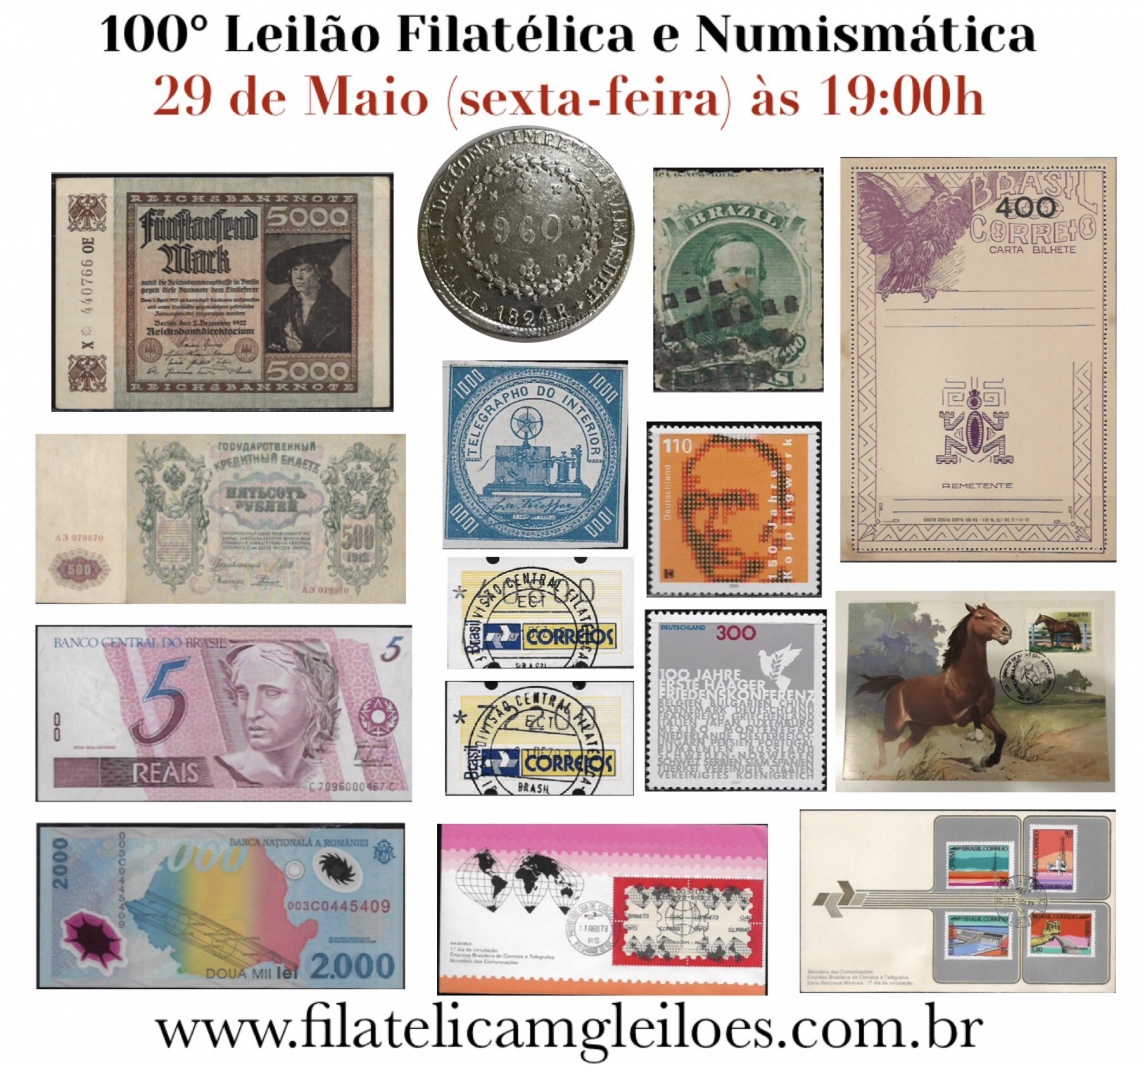 100º Leilão de Filatelia e Numismática